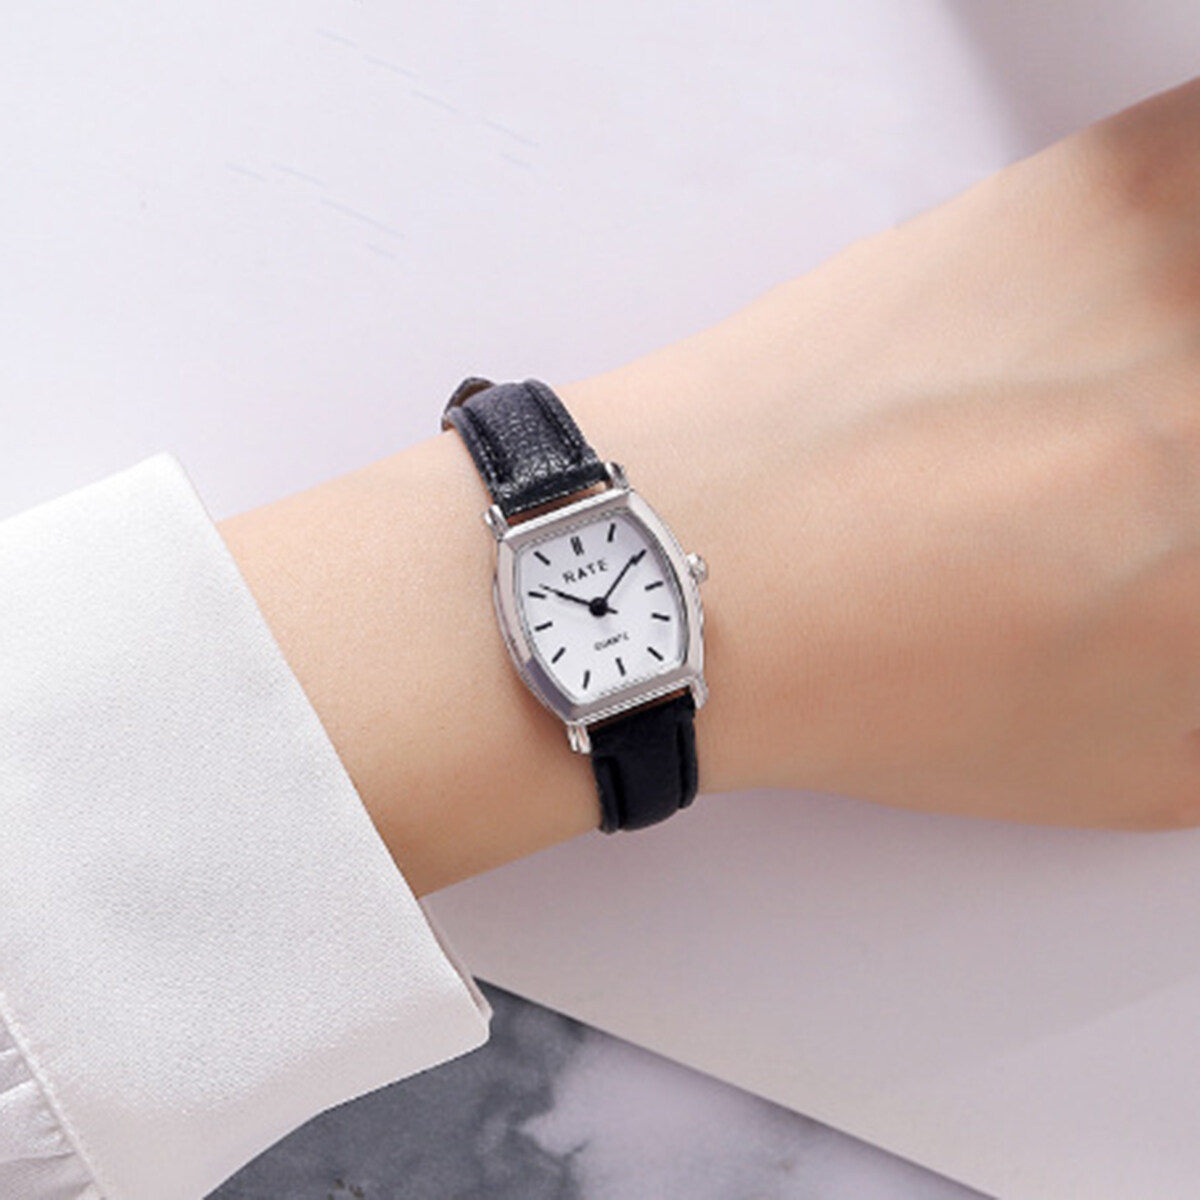 【Miss lan】đồng hồ đeo tay Đầm Nữ mặt số vuông thanh lịch cho nữ dây đeo da đồng hồ nữ cổ điển Đồng hồ nữ